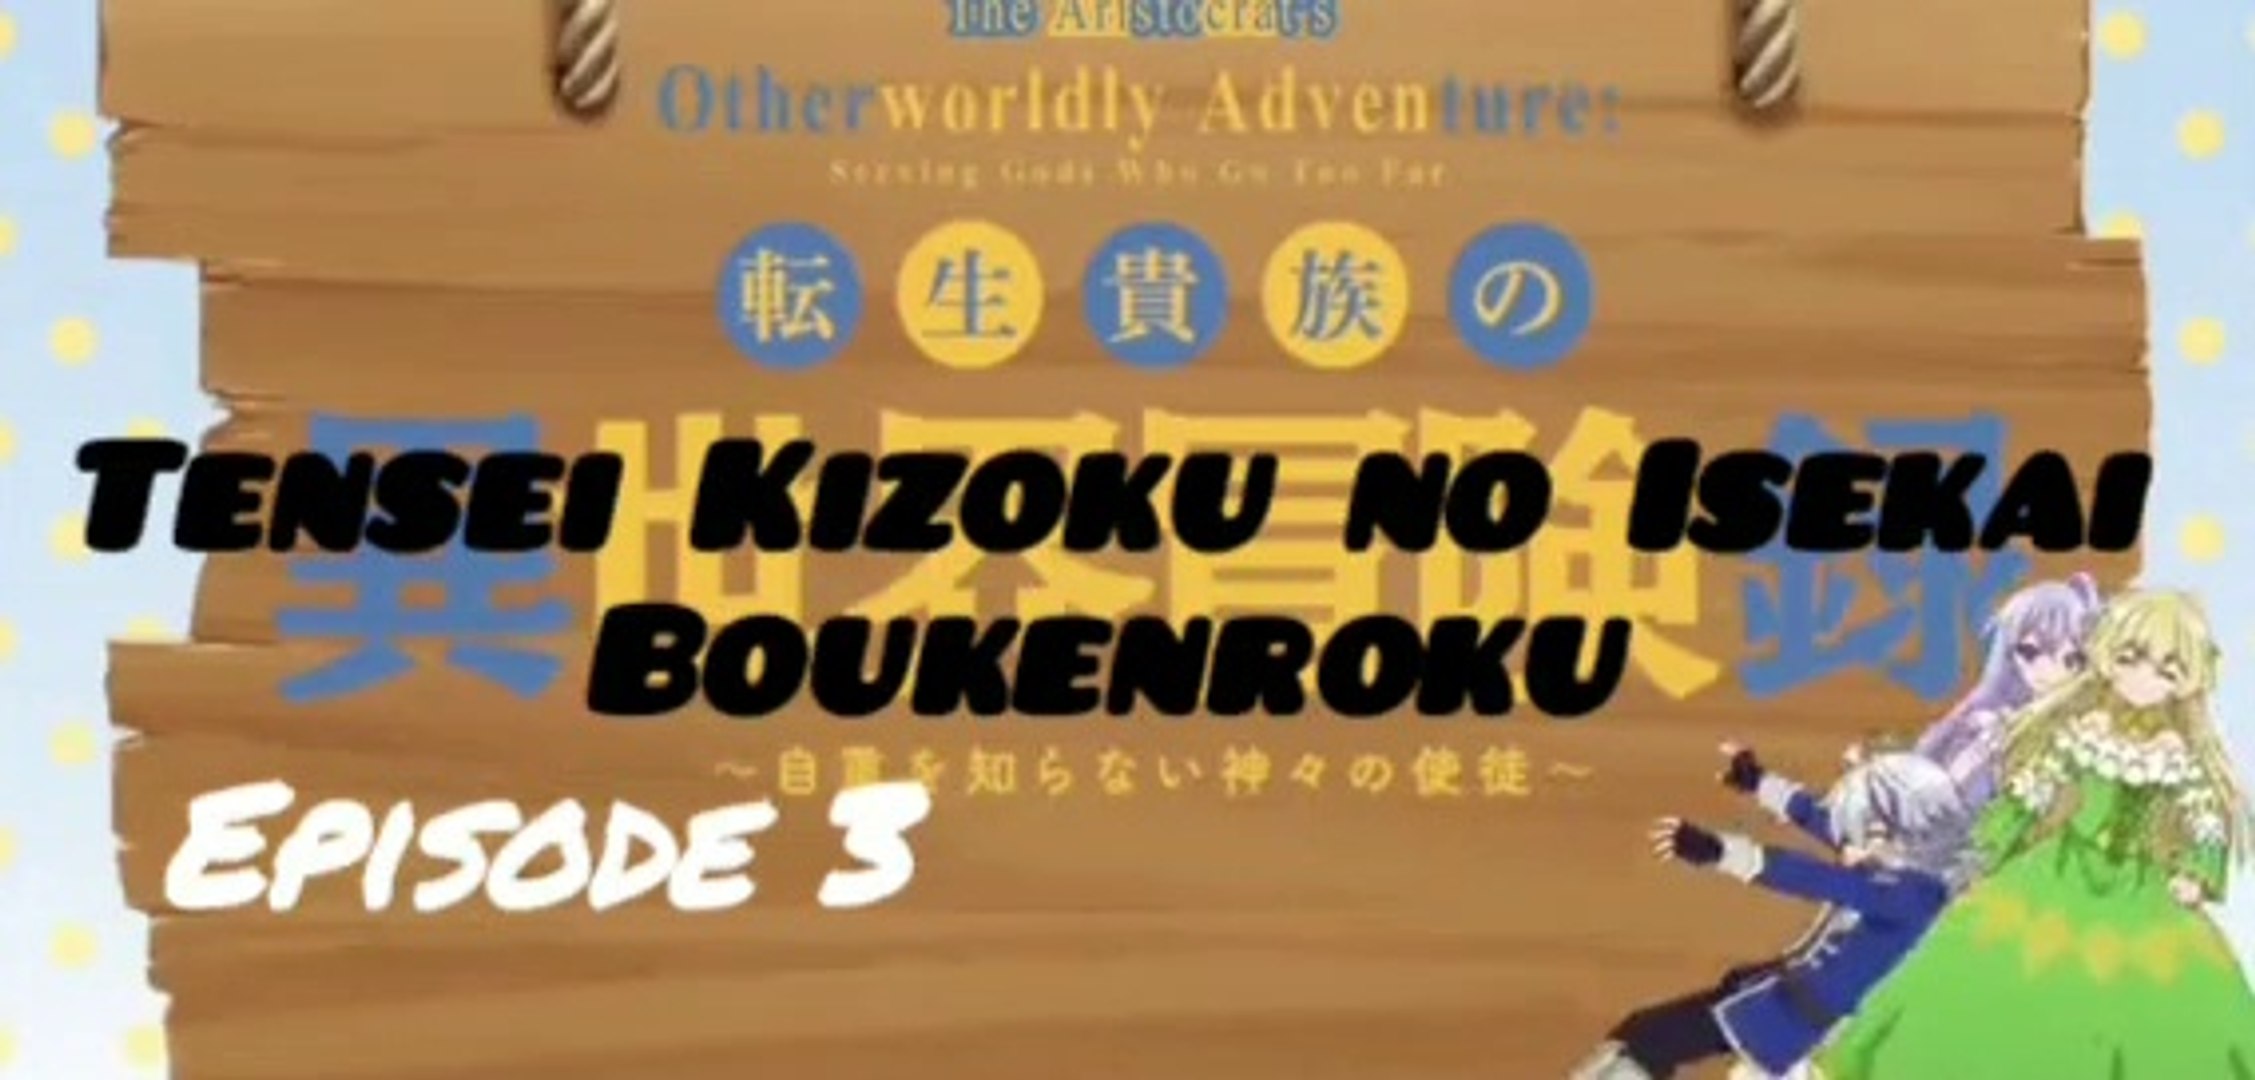 Tensei Kizoku no Isekai Bouken Roku (The Aristocrat's Otherworldly